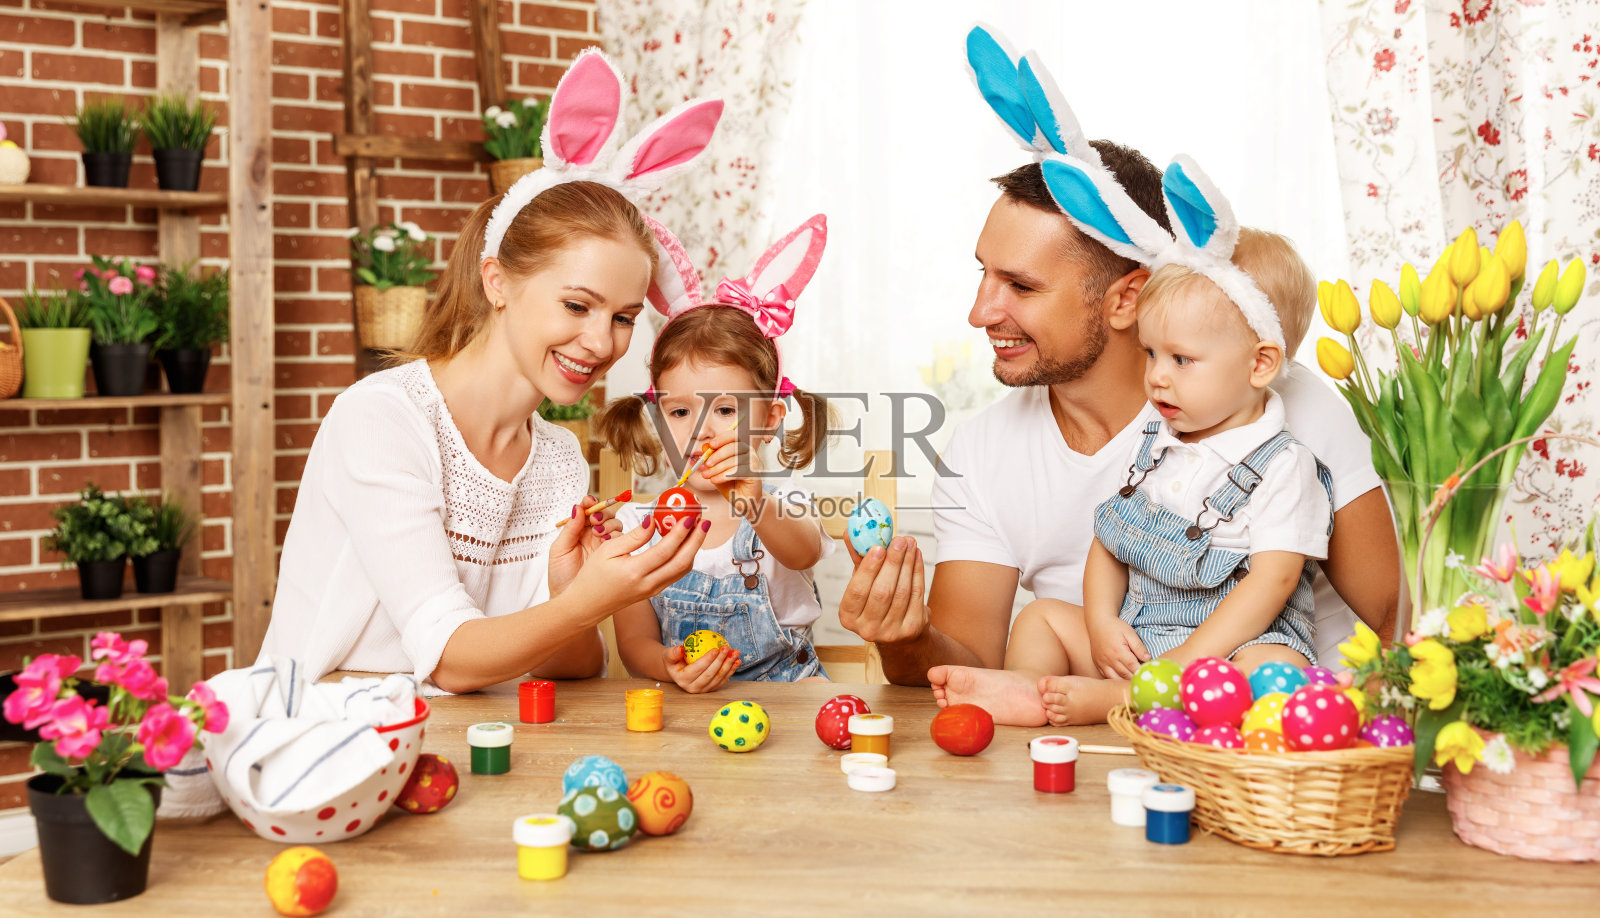 复活节快乐!家人的母亲，父亲和孩子们为节日画鸡蛋照片摄影图片